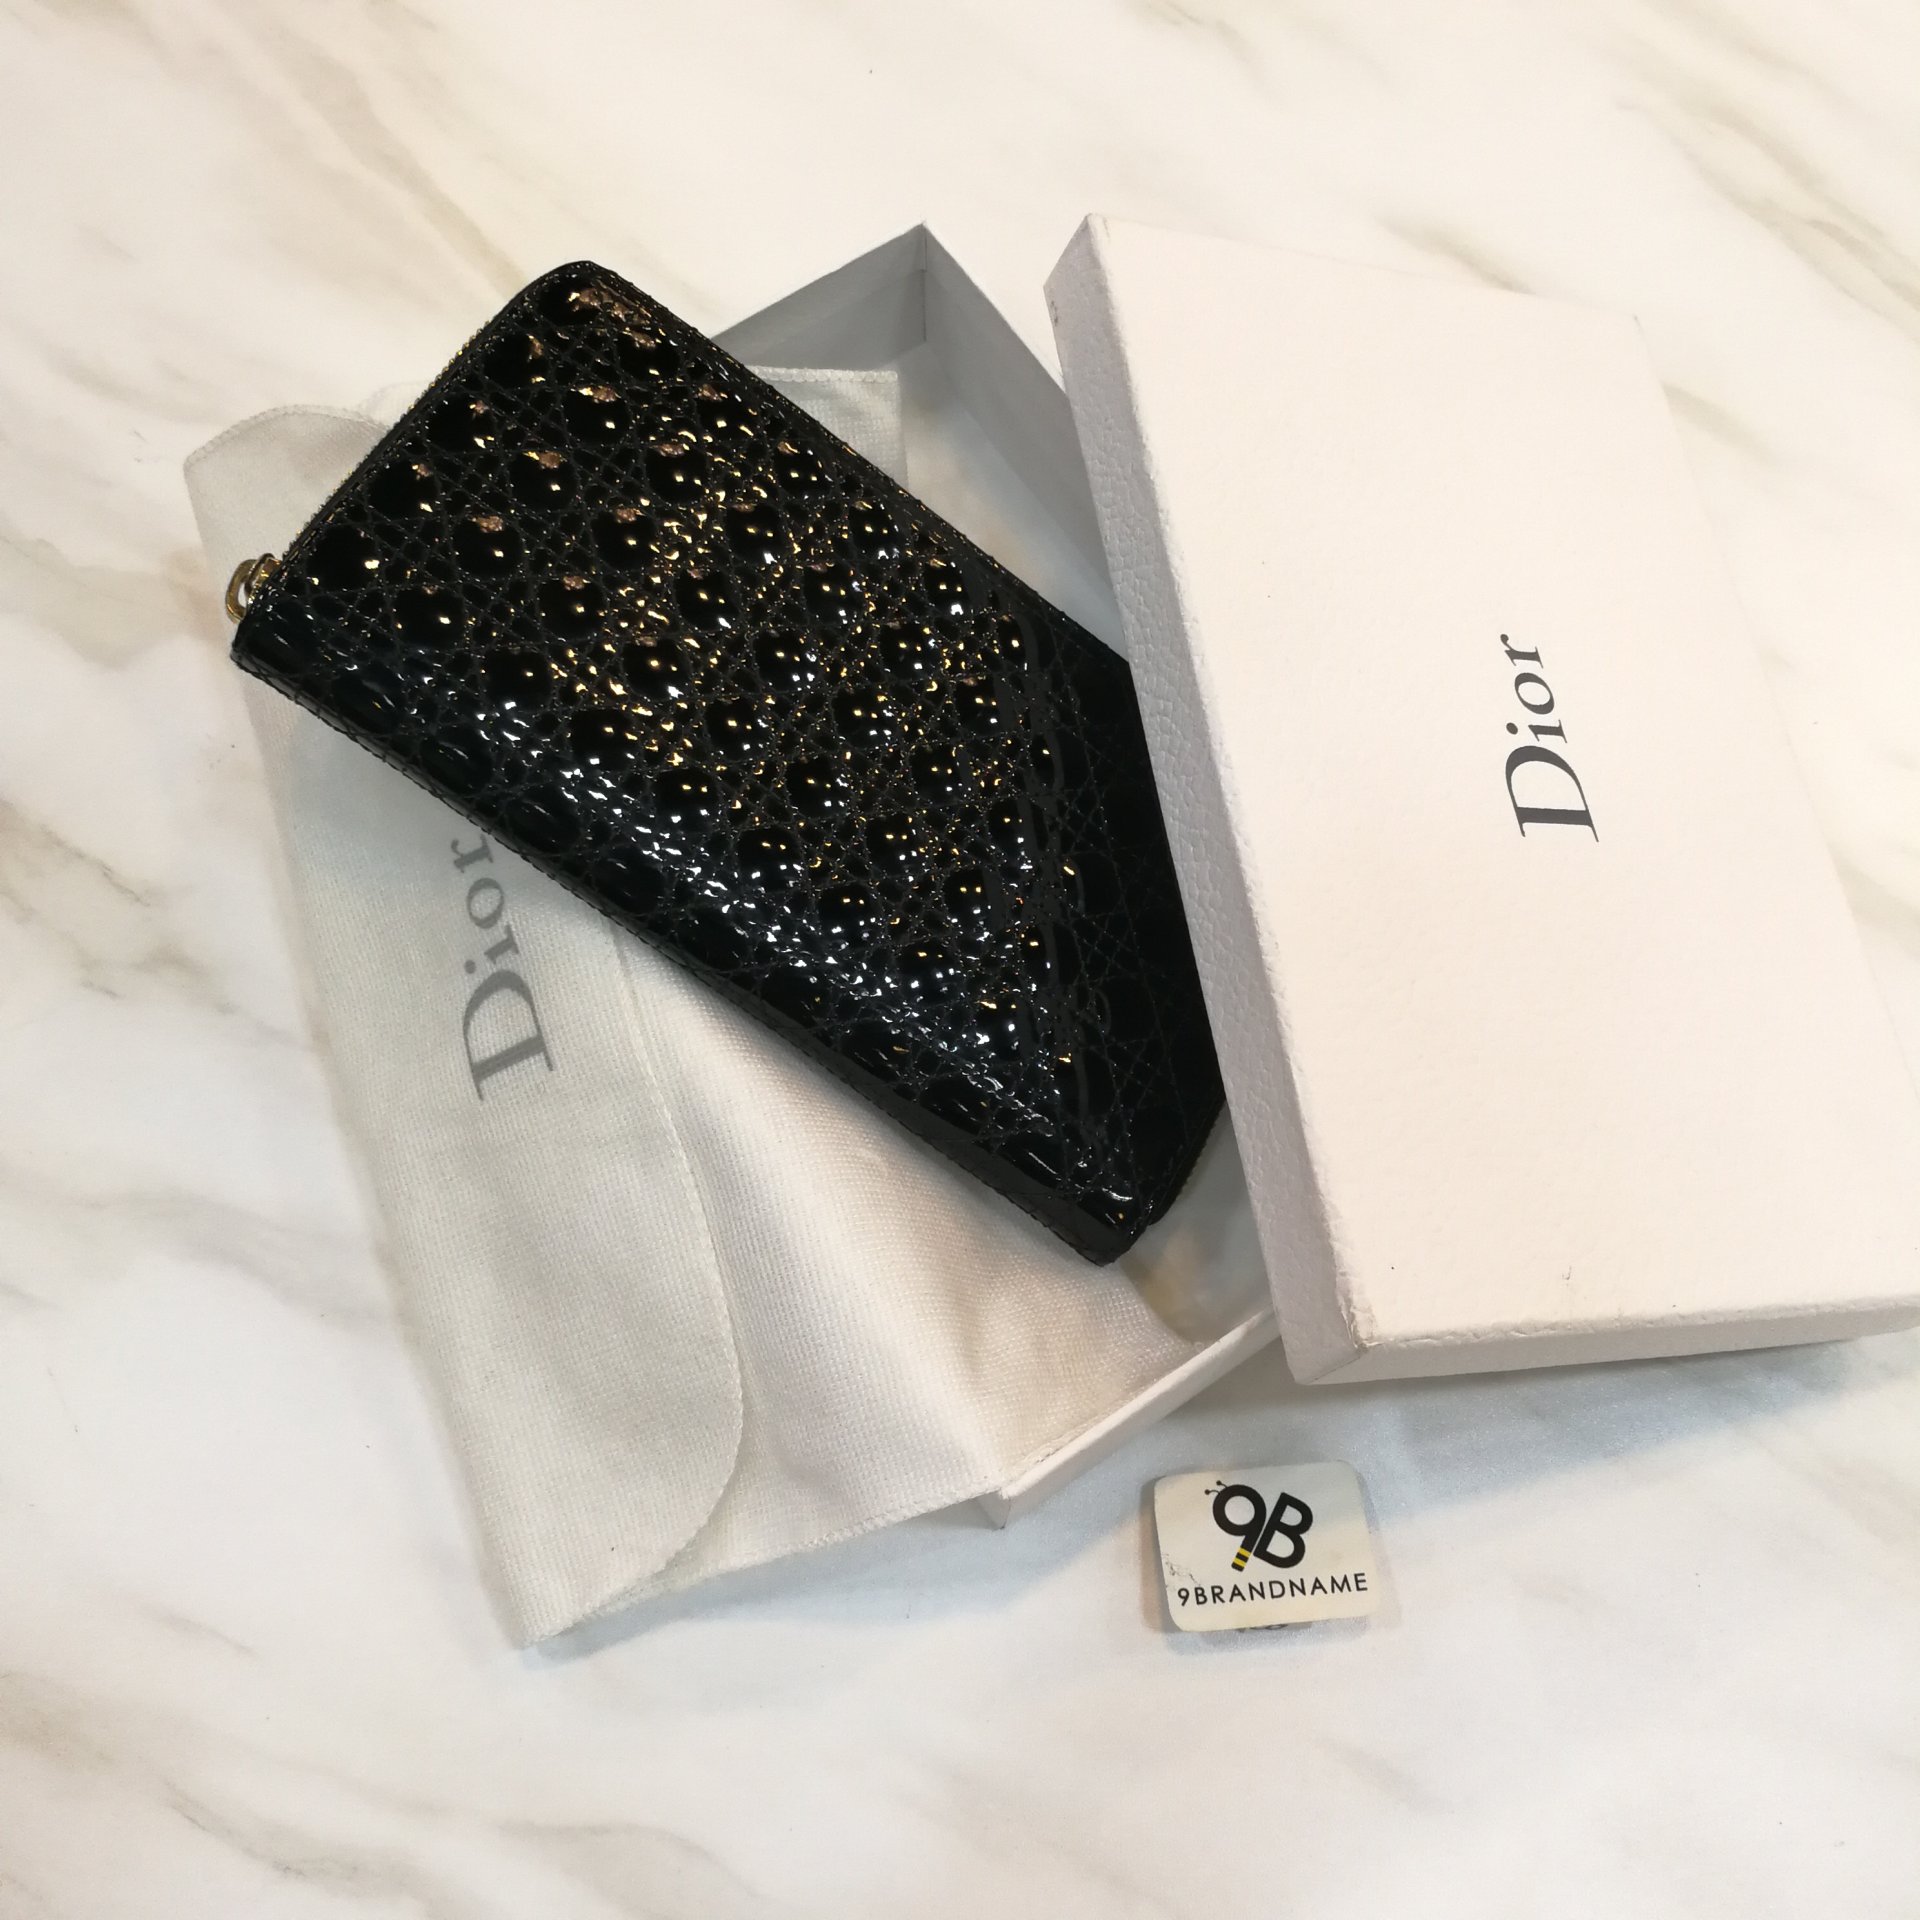 Used Christian Dior saddle 5-gusset card holder - 9brandname